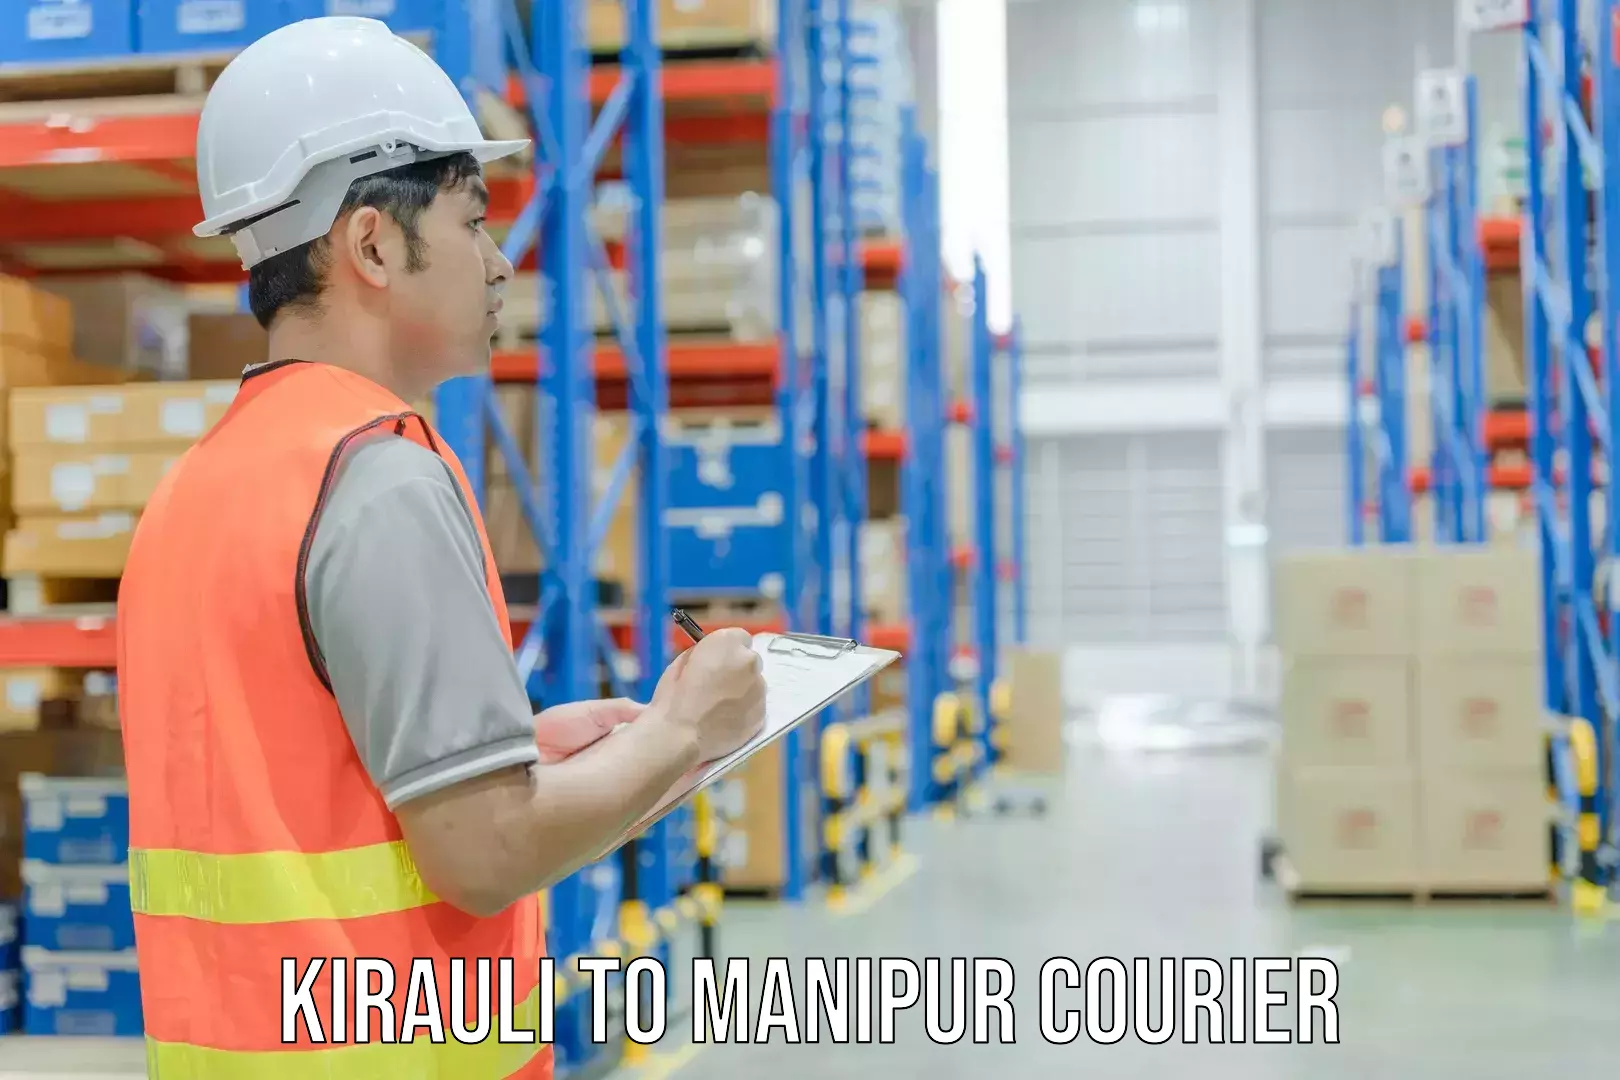 Bulk courier orders Kirauli to Kakching